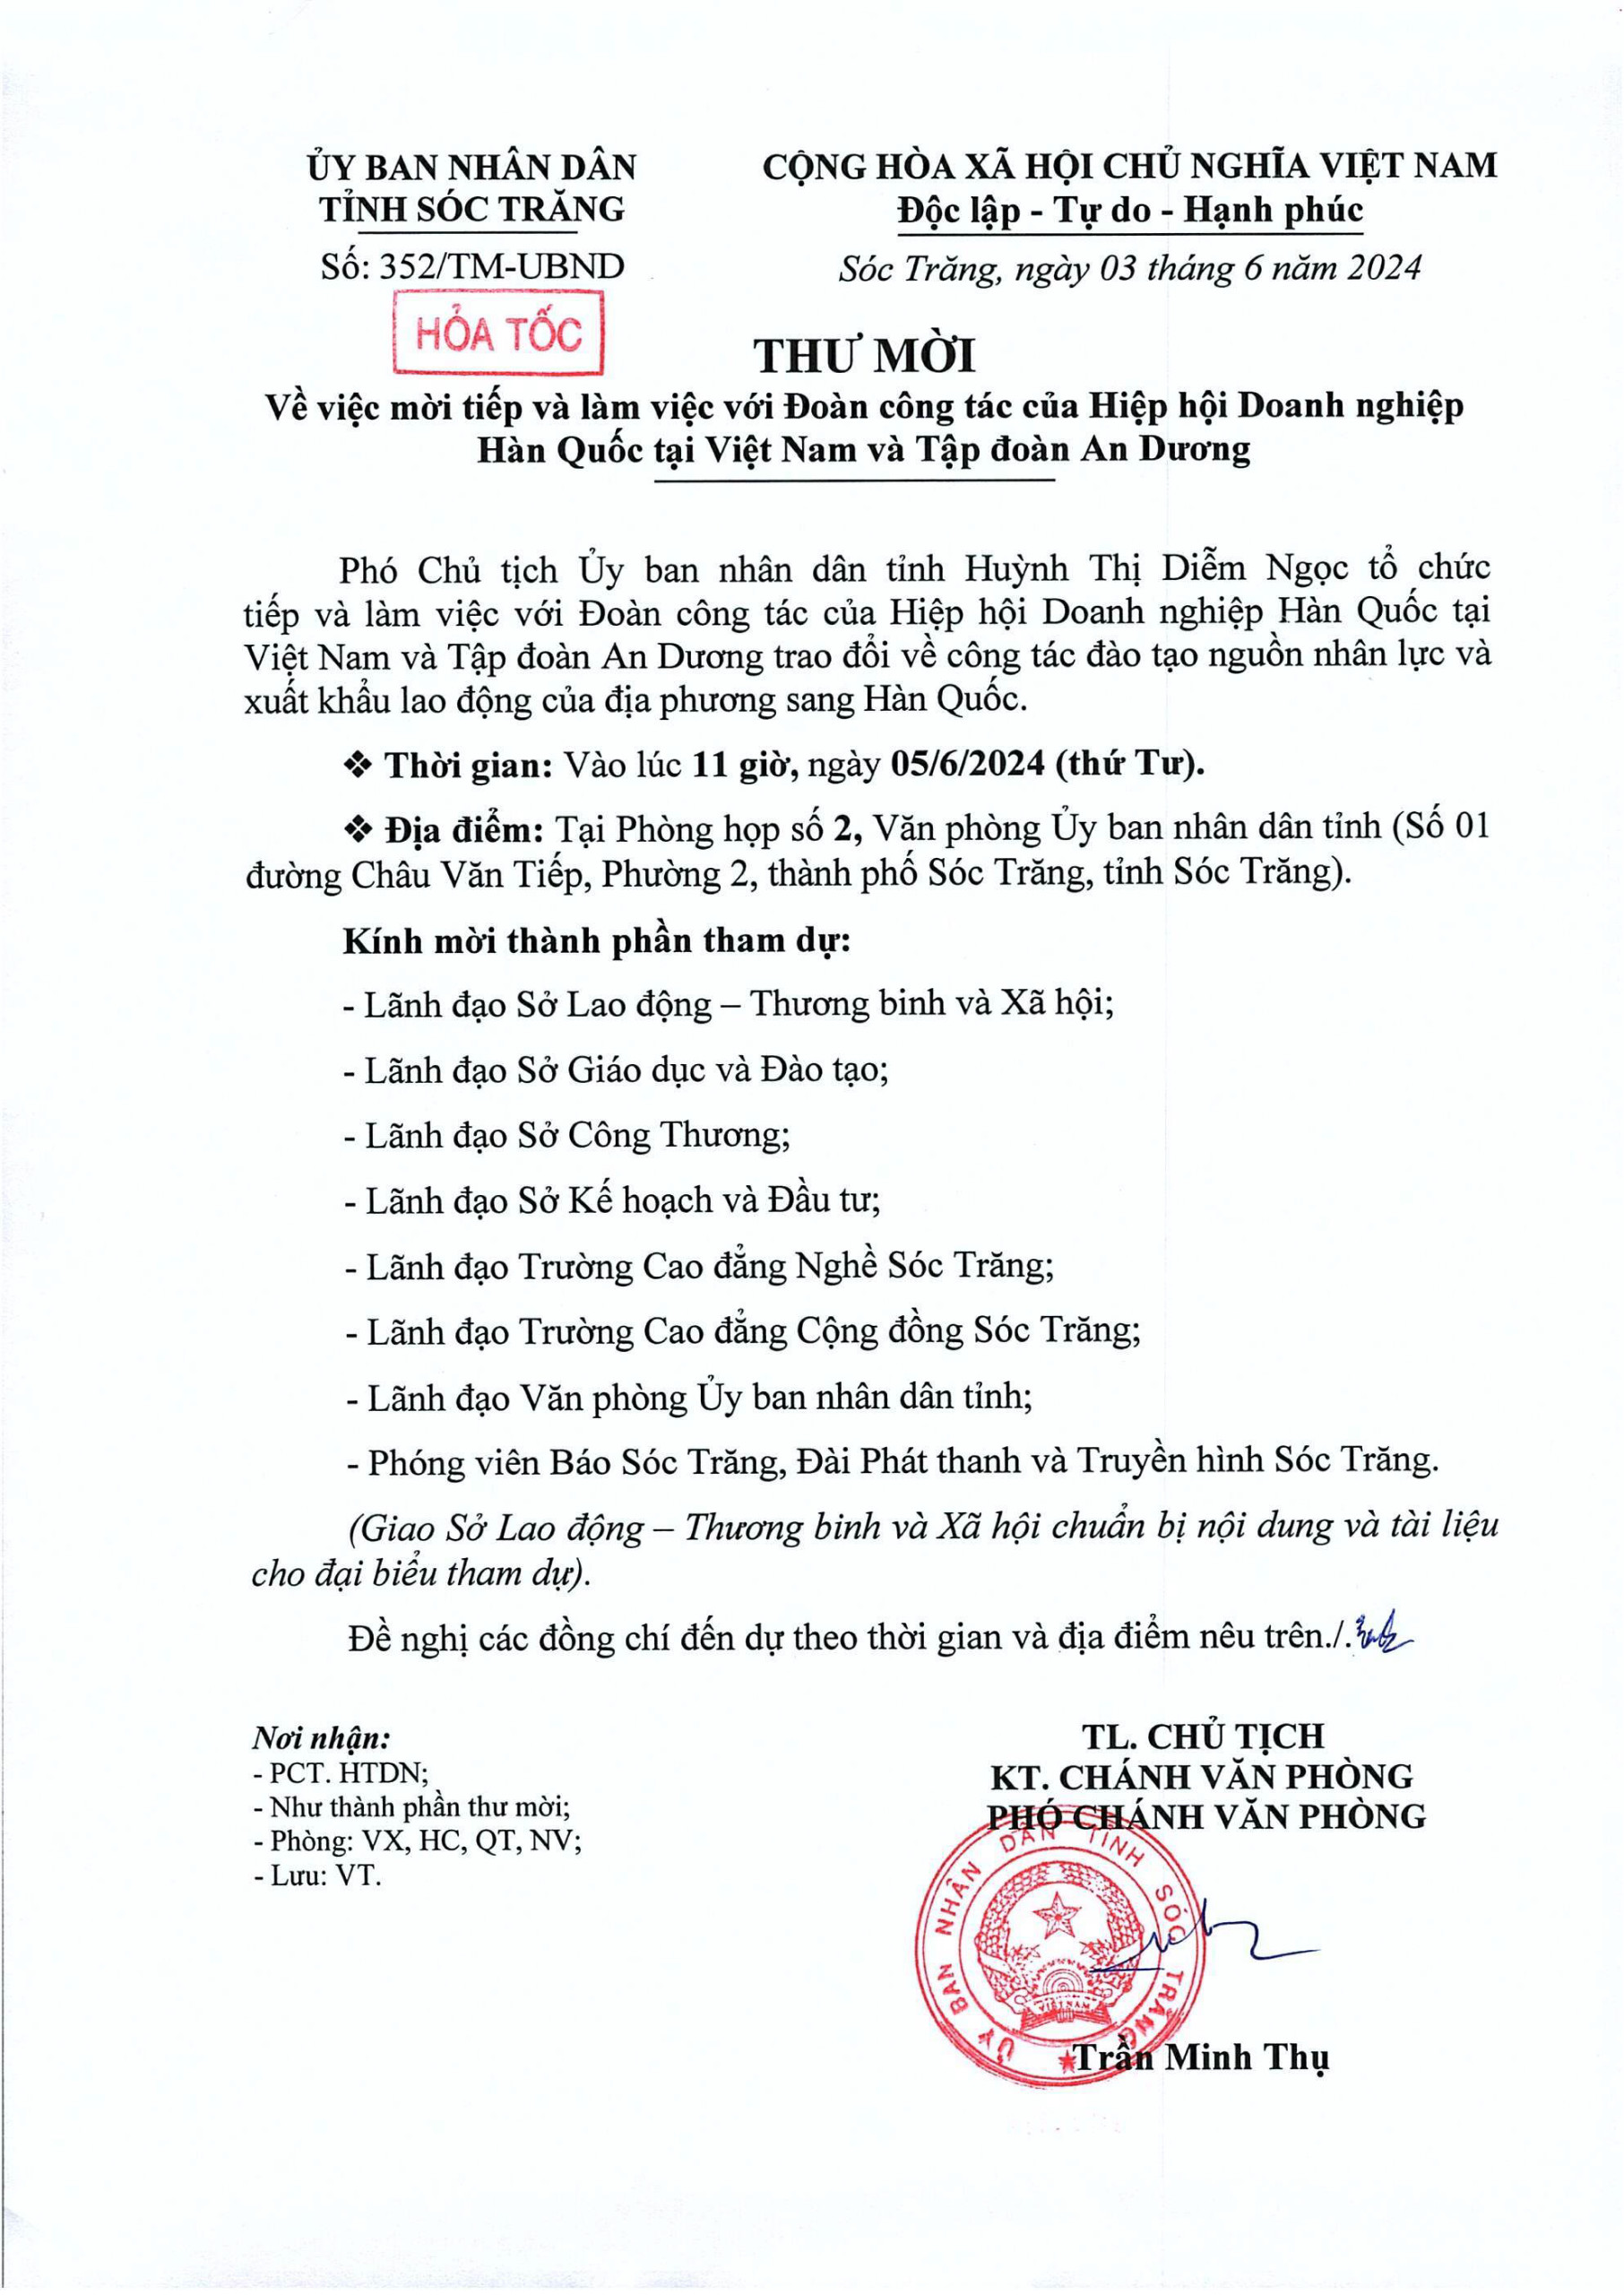 Công văn của UBND tỉnh Sóc Trăng về việc mời tiếp và làm việc với Đoàn công tác của Hiệp hội Doanh nghiệp Hàn Quốc tại Việt Nam và Tập đoàn An Dương.